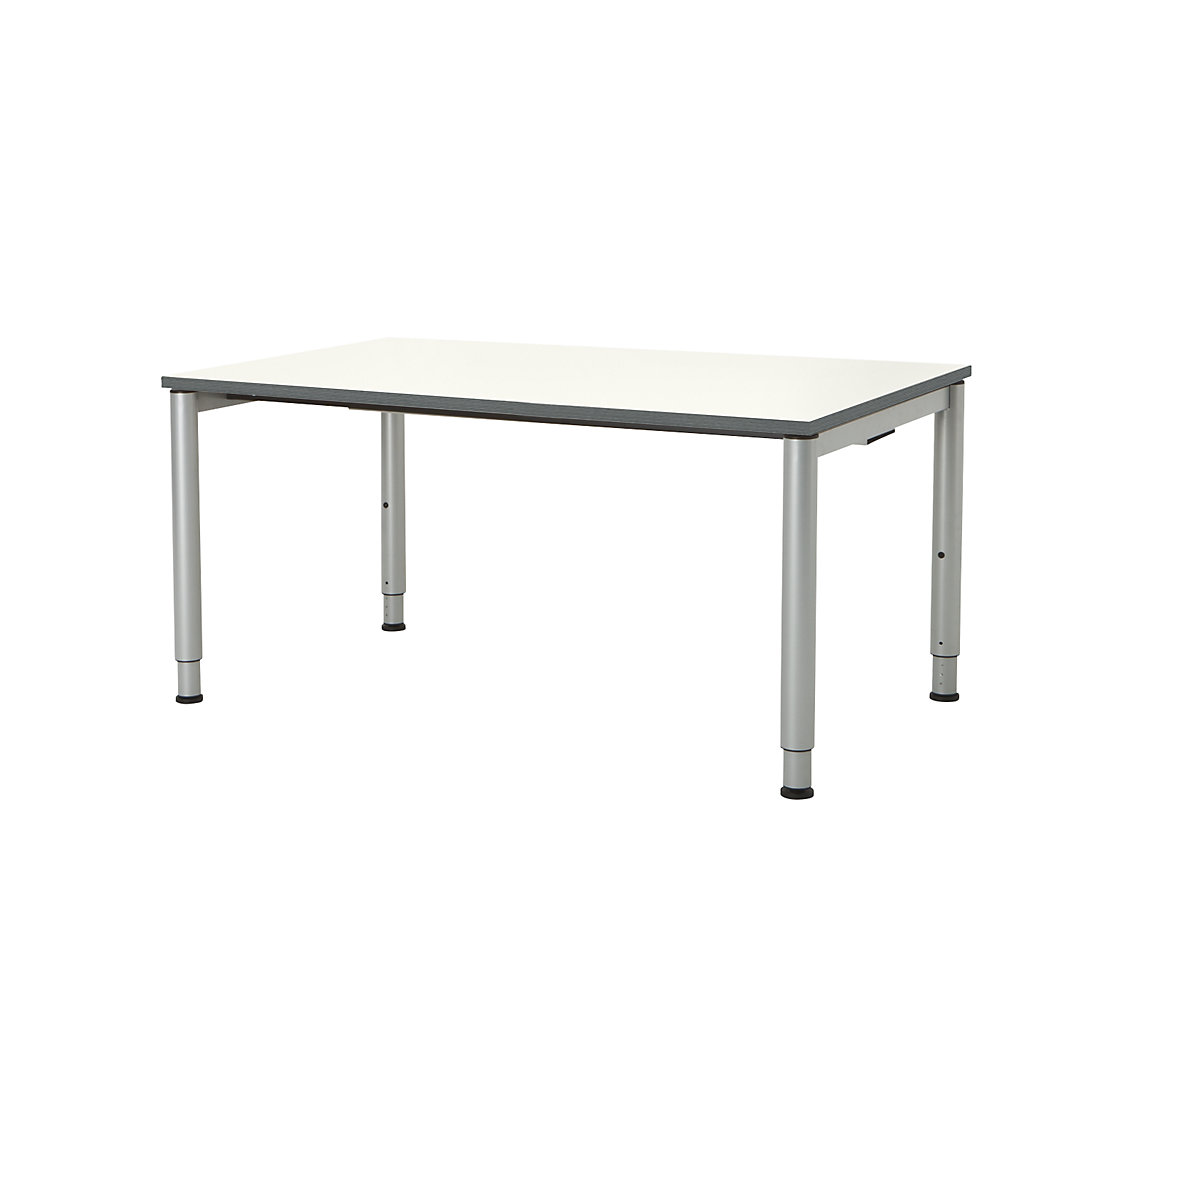 Pravokotna miza, podnožje iz okroglih cevi – mauser, VxŠ 650 – 850 x 1600 mm, plošča bele barve, ogrodje aluminijaste barve-3